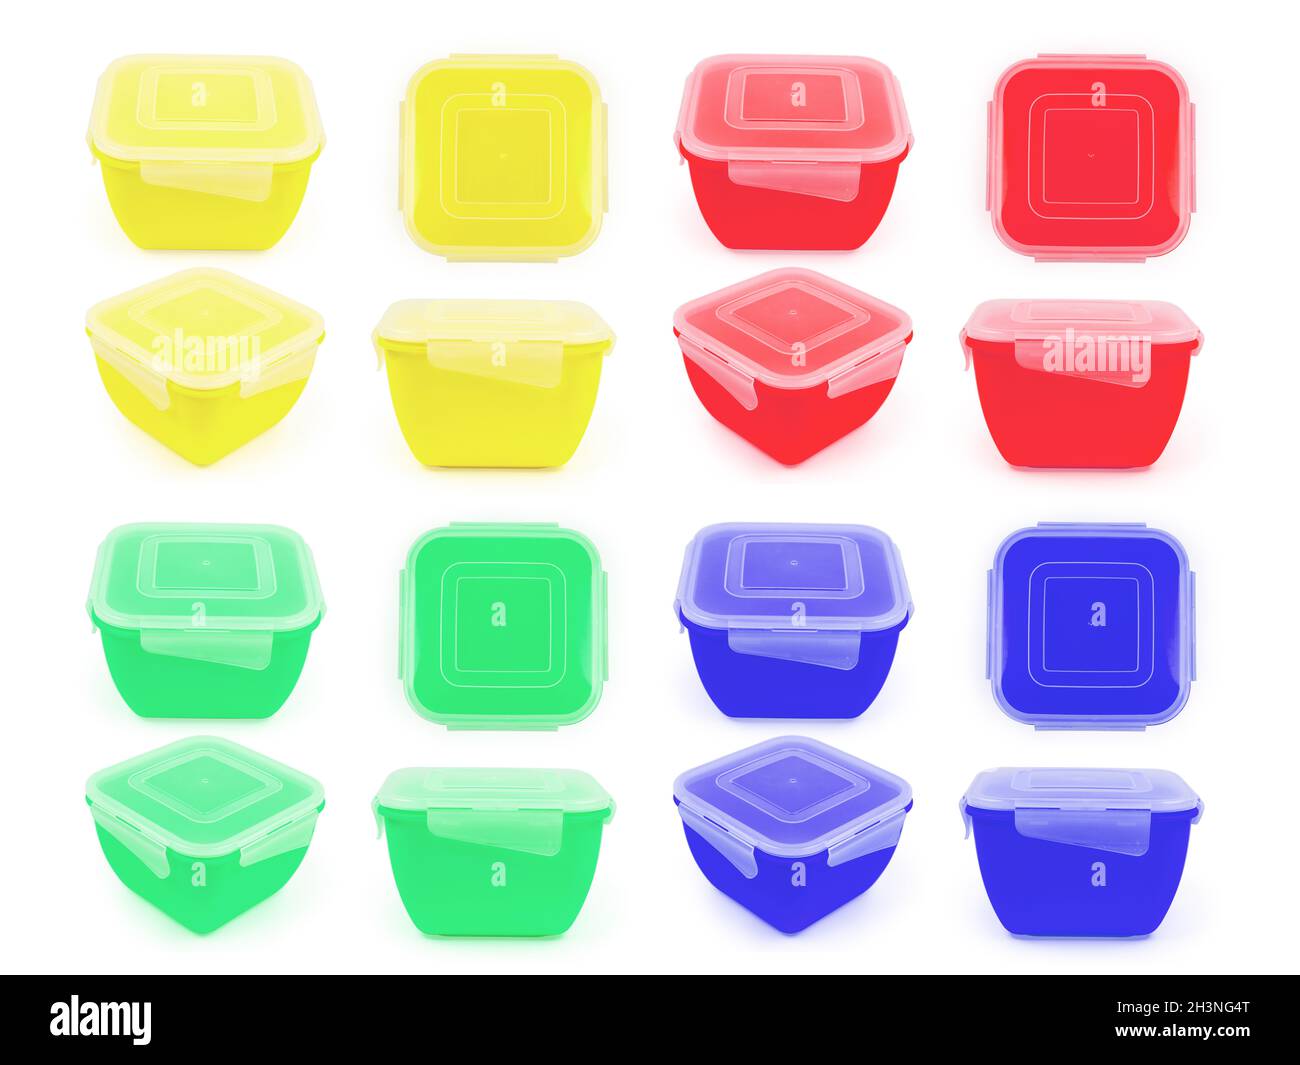 Recipiente de plástico cuadrado para alimentos en color amarillo, azul,  verde y rojo en diferentes proyecciones aisladas sobre fondo blanco  Fotografía de stock - Alamy